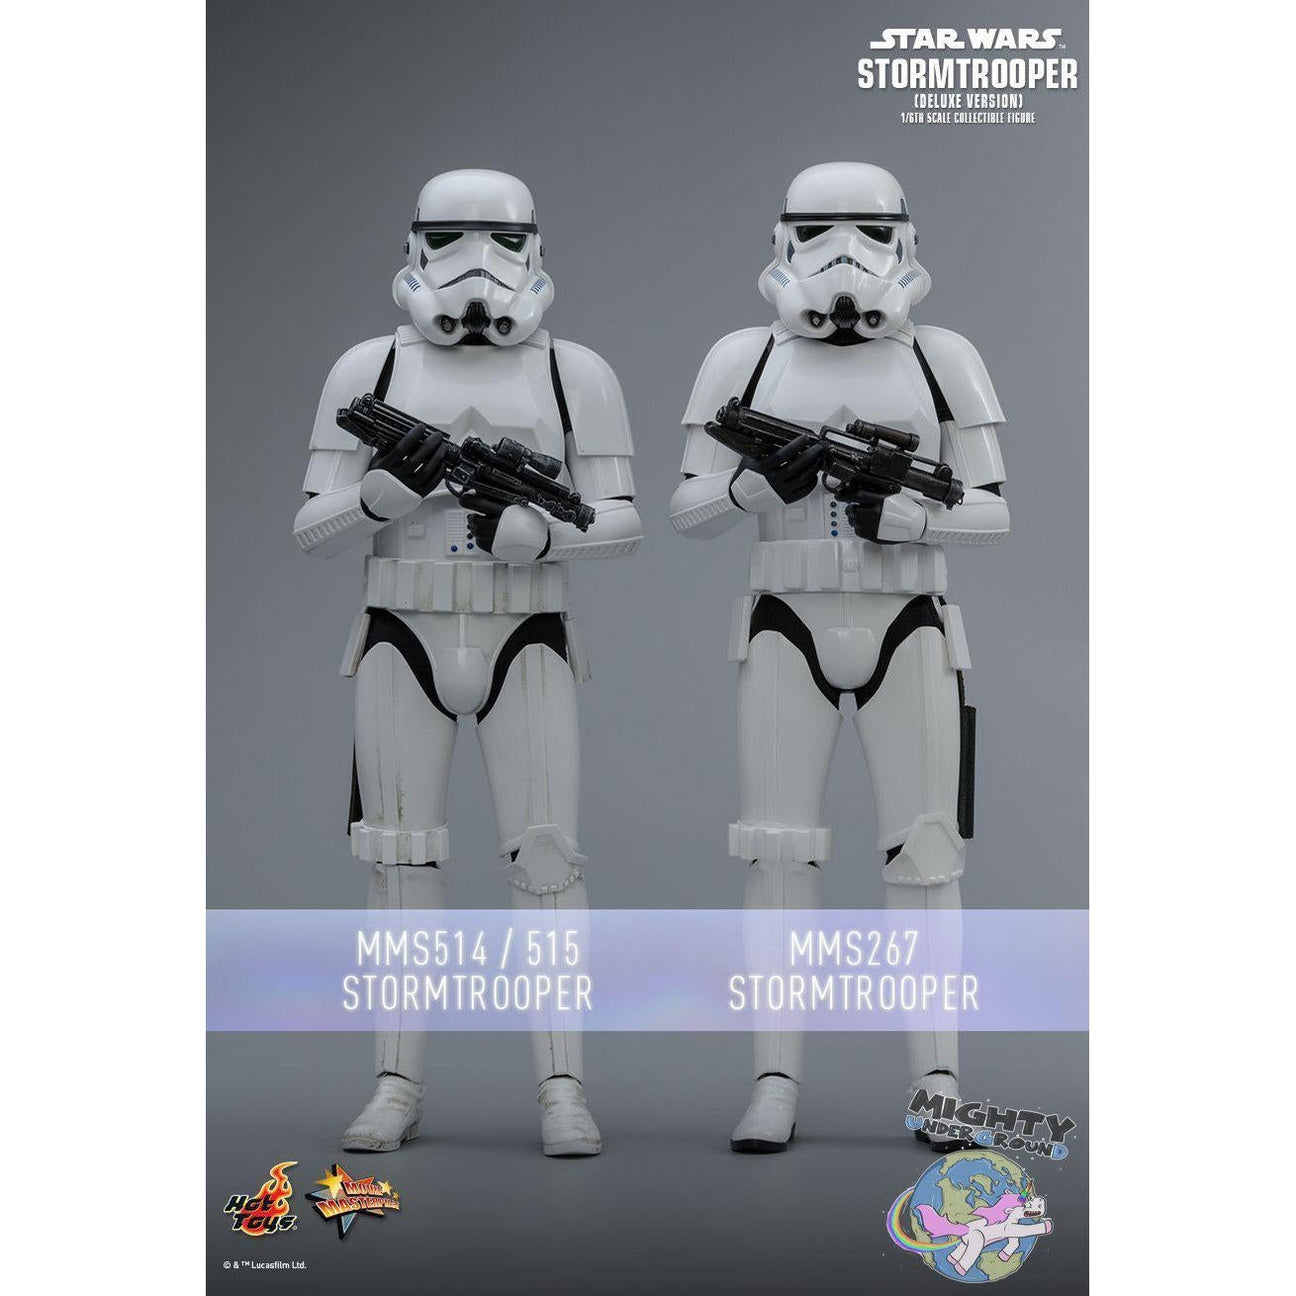 Star Wars: Stormtrooper (Deluxe Version) 1/6-Actionfiguren-Hot Toys-mighty-underground